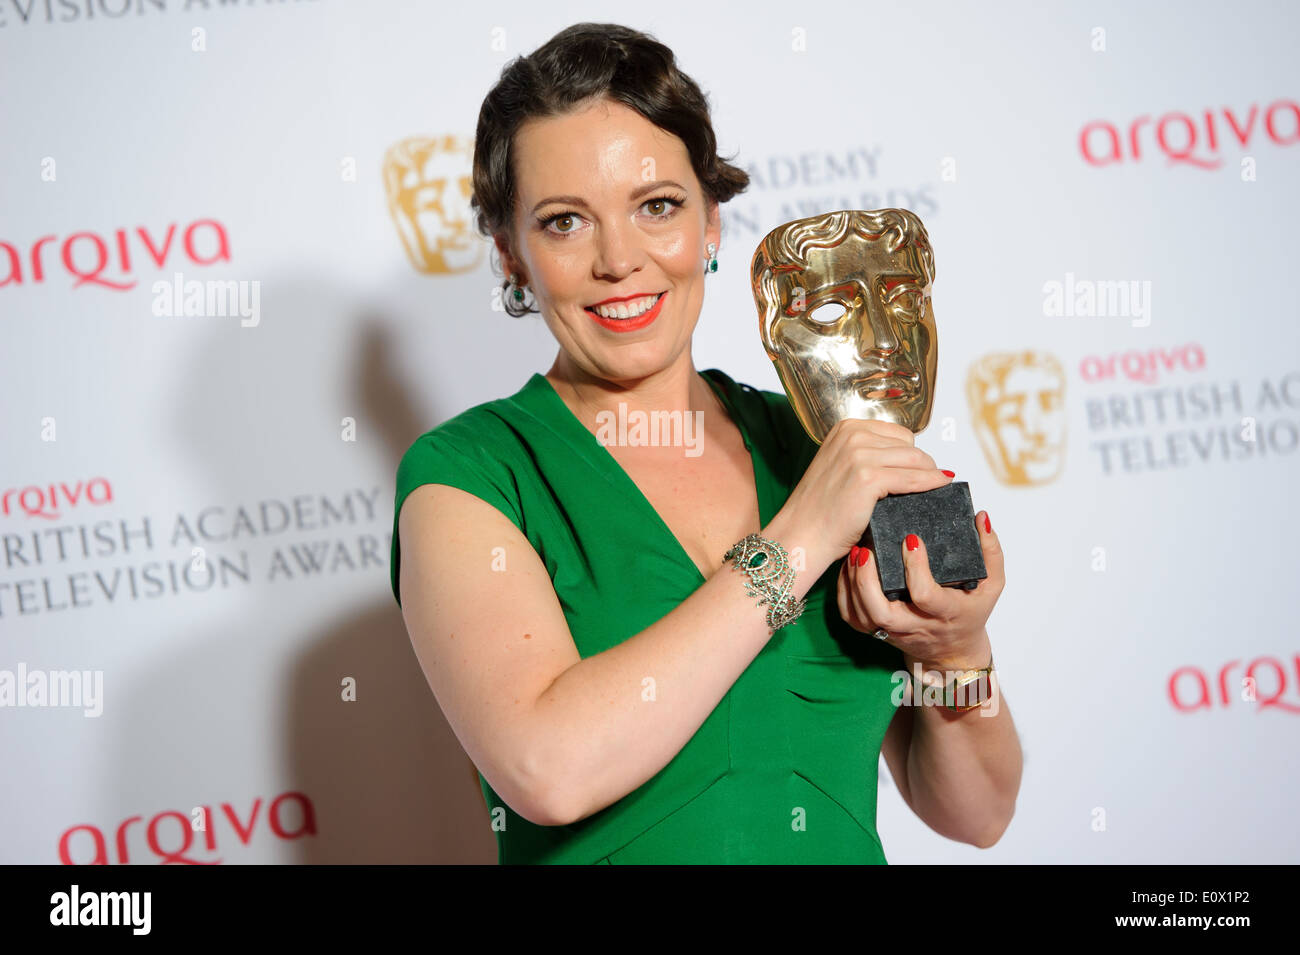 Olivia Colman pone per i fotografi nella camera dei vincitori presso il British Academy Awards di televisione. Foto Stock